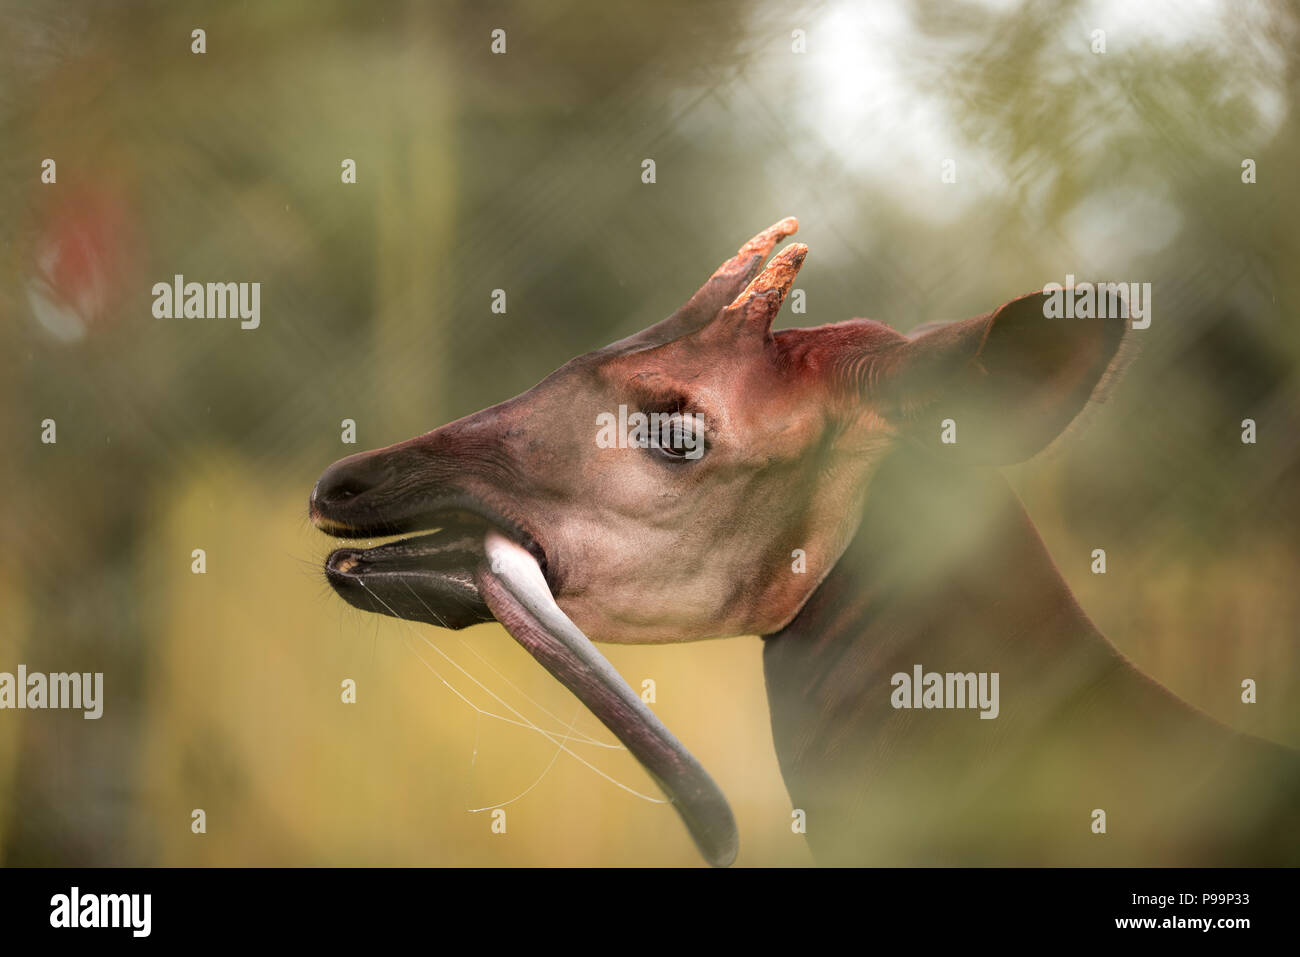 Okapi Nahaufnahme Portrait von egsotic gefährdete Tier, okapi setzt mit herausgestreckter Zunge Stockfoto